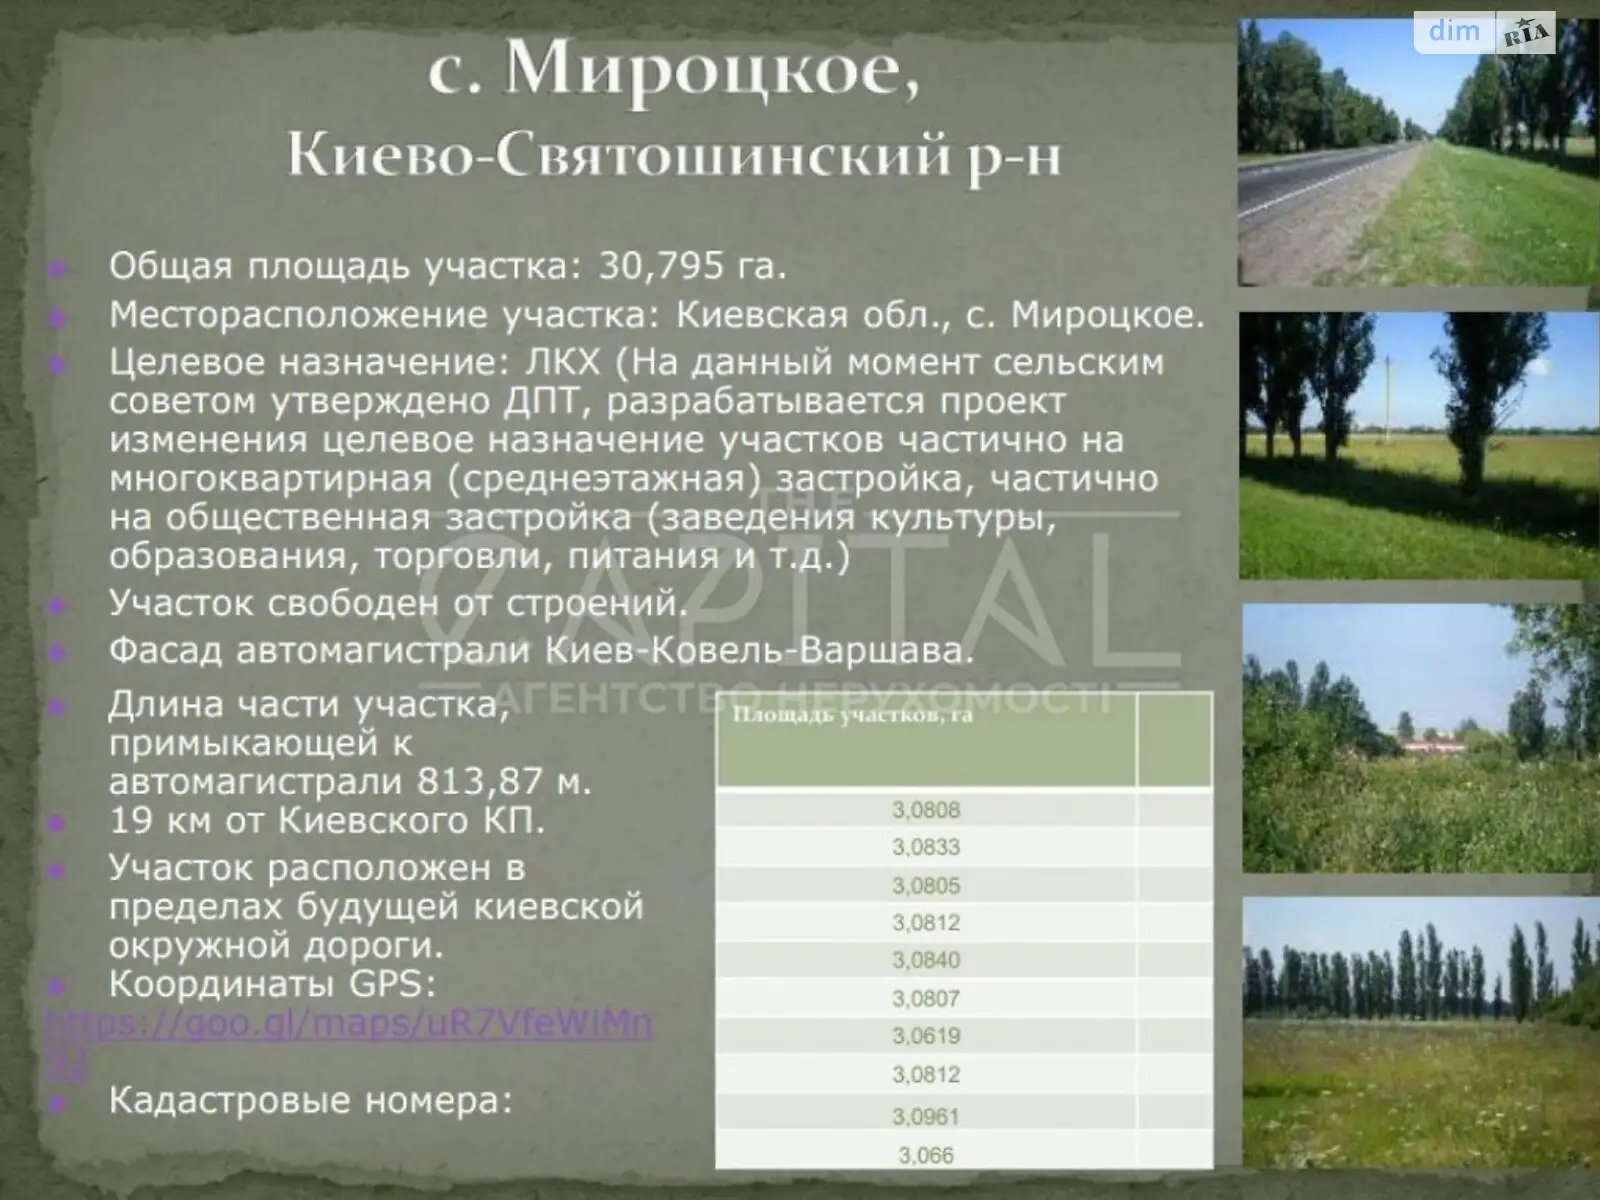 Продается земельный участок 3079 соток в Киевской области, цена: 3079570 $ - фото 1